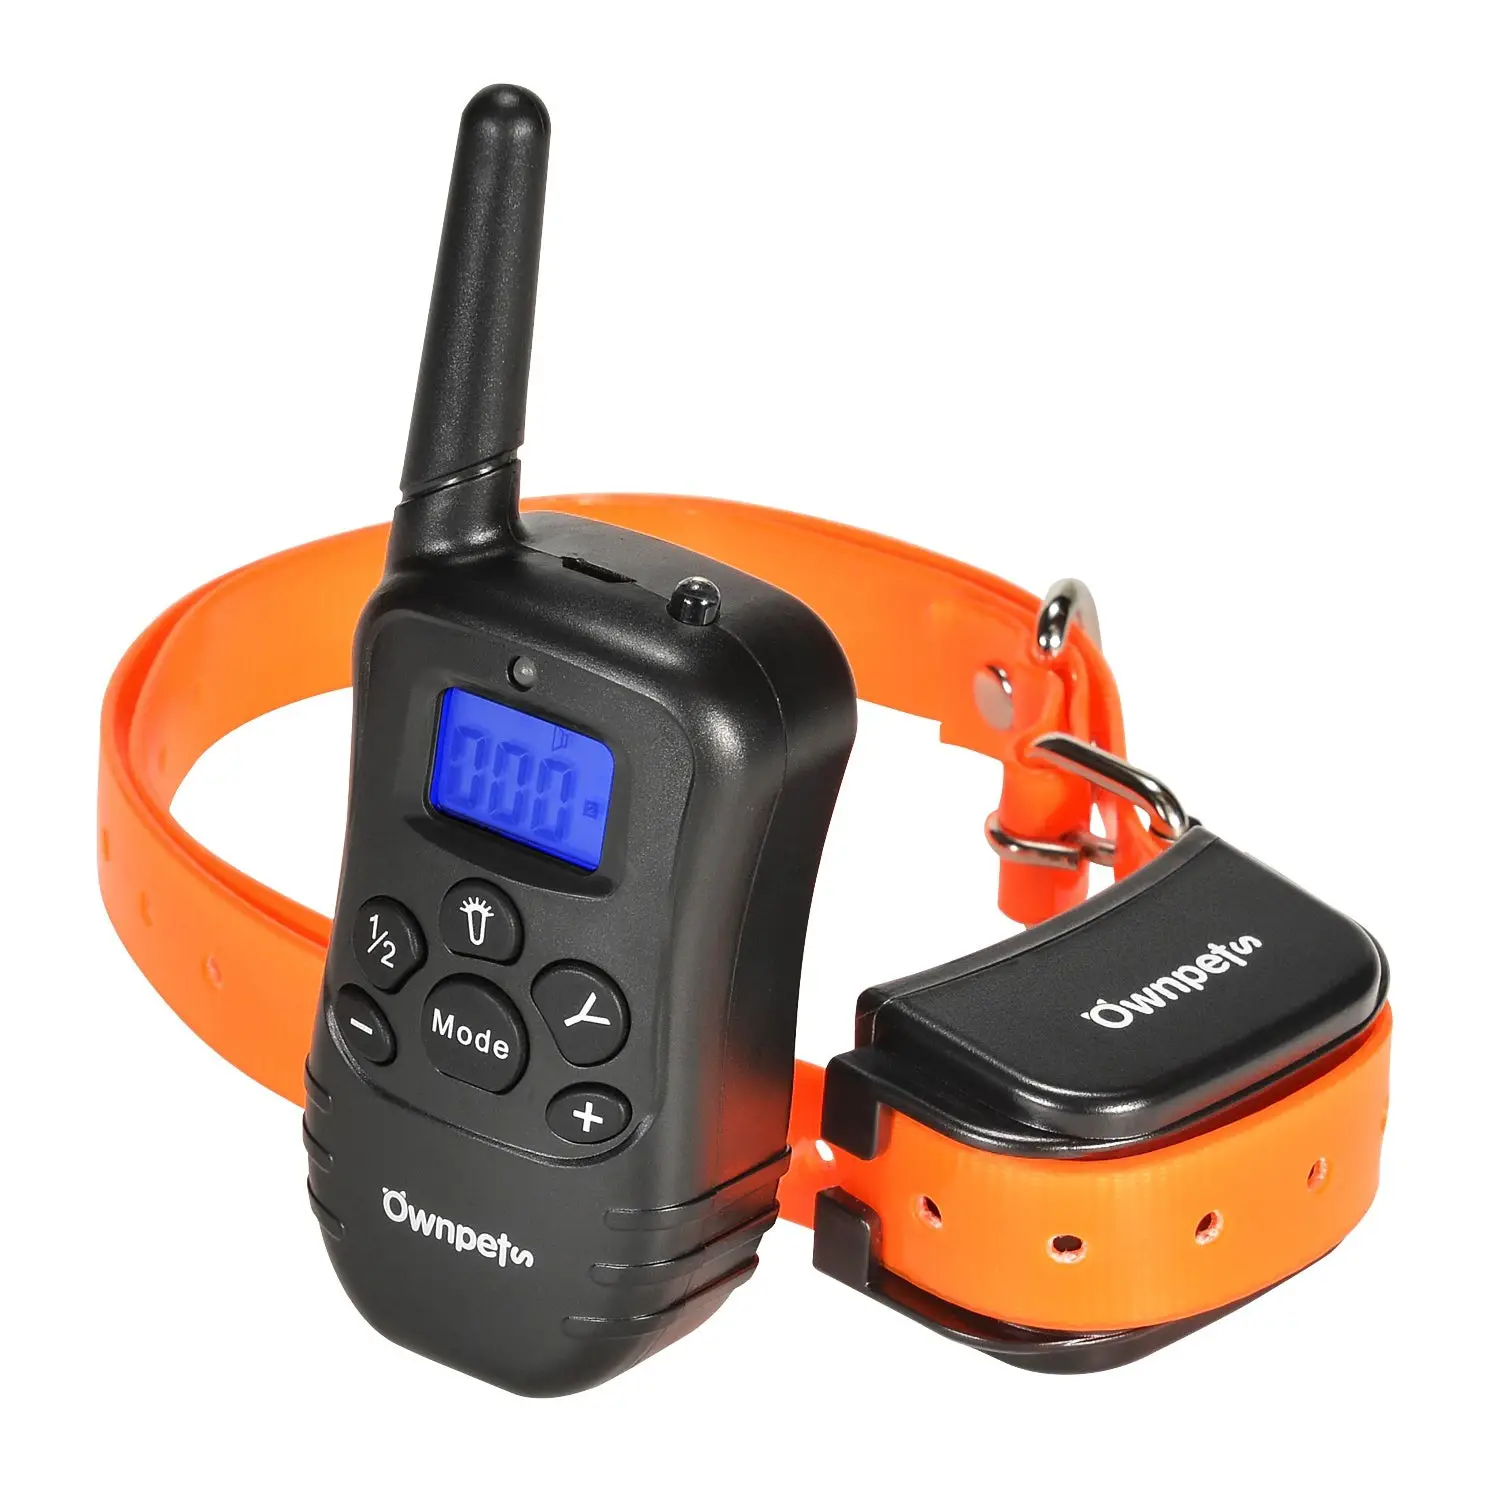 AGPTEK Ownpets Remote Controlled Dog Training Collar User Manual